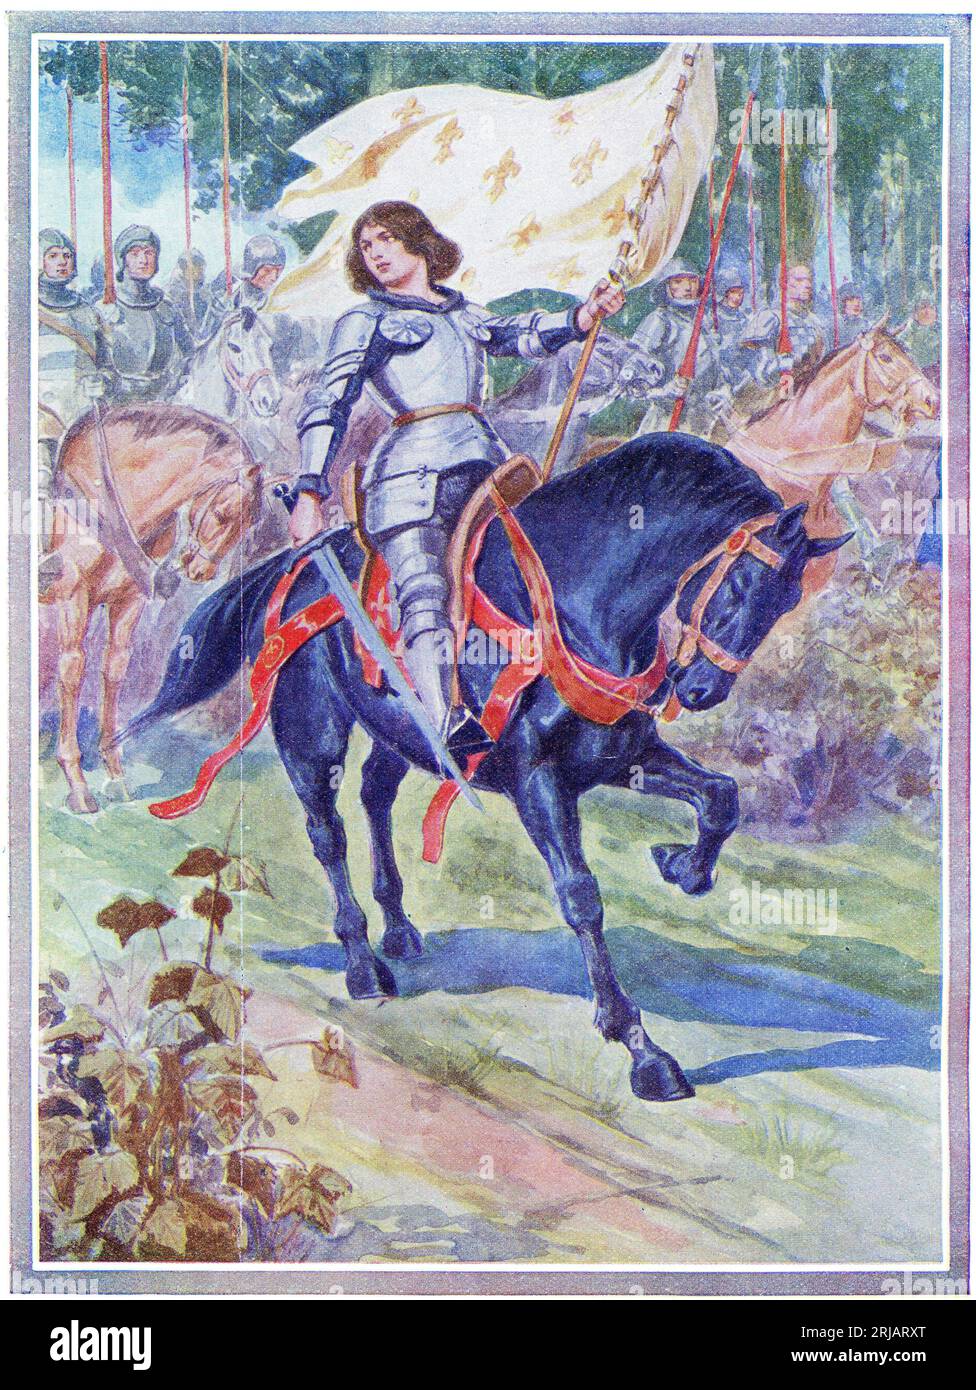 Jeanne d'Arc an der Spitze der französischen Armee, Jeanne ( ca. 1412 – 30. Mai 1431) ist ein Schutzpatron von Frankreich, geehrt als Verteidigerin der französischen Nation für ihre Rolle bei der Belagerung von Orléans und ihr Beharren auf der Krönung Karls VII. von Frankreich während des Hundertjährigen Krieges. Stockfoto